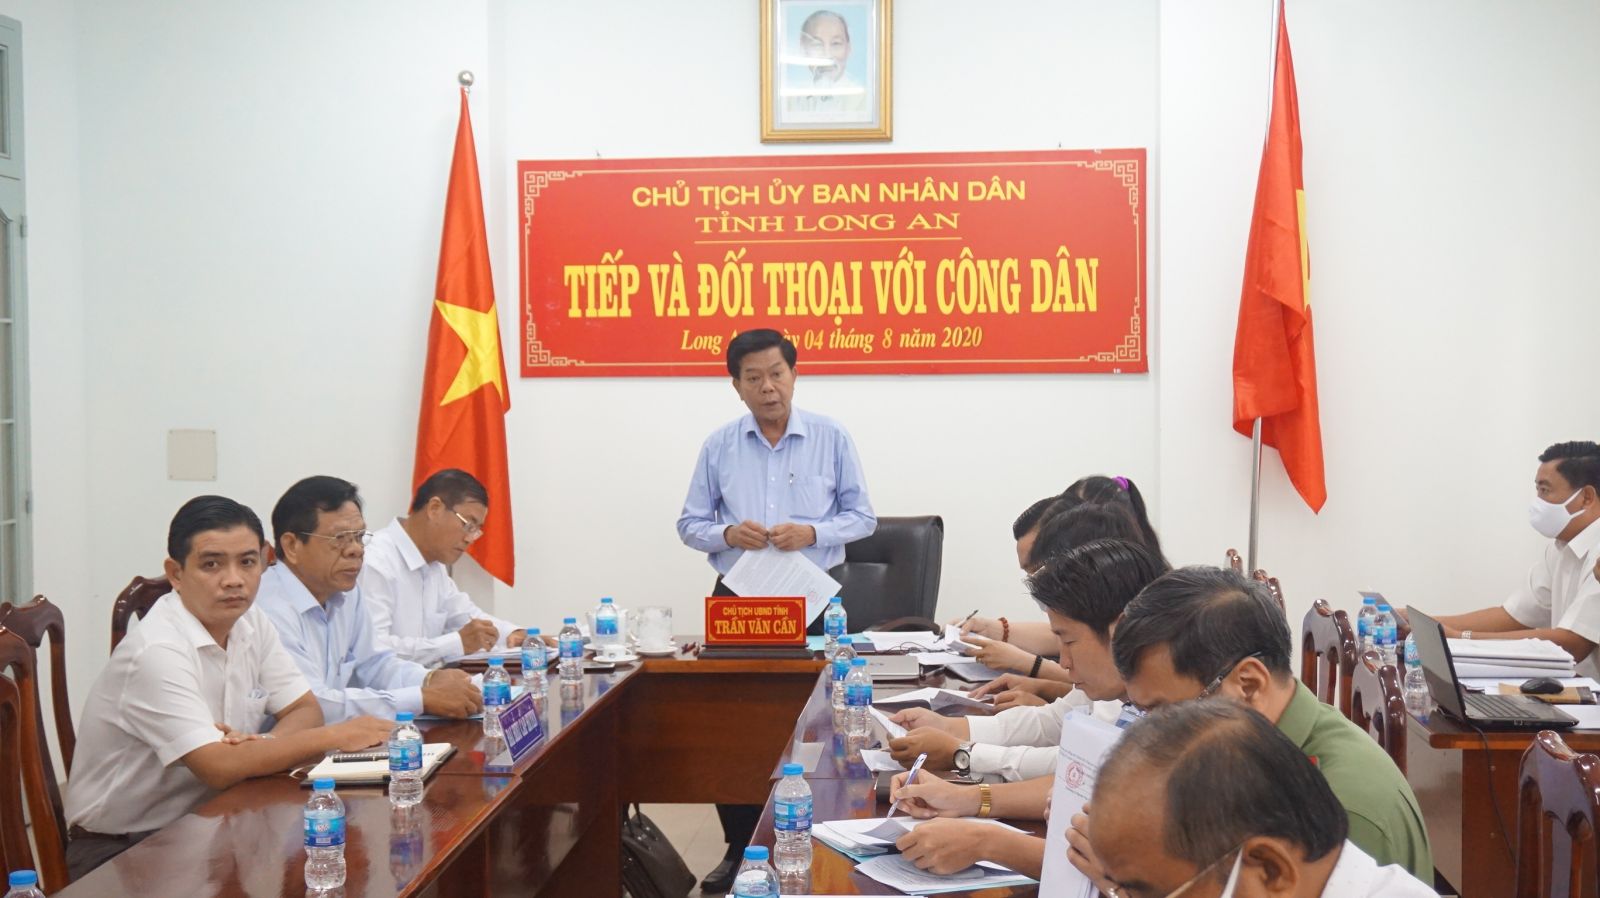 Chủ tịch UBND tỉnh - Trần Văn Cần chủ trì tiếp, đối thoại với công dân